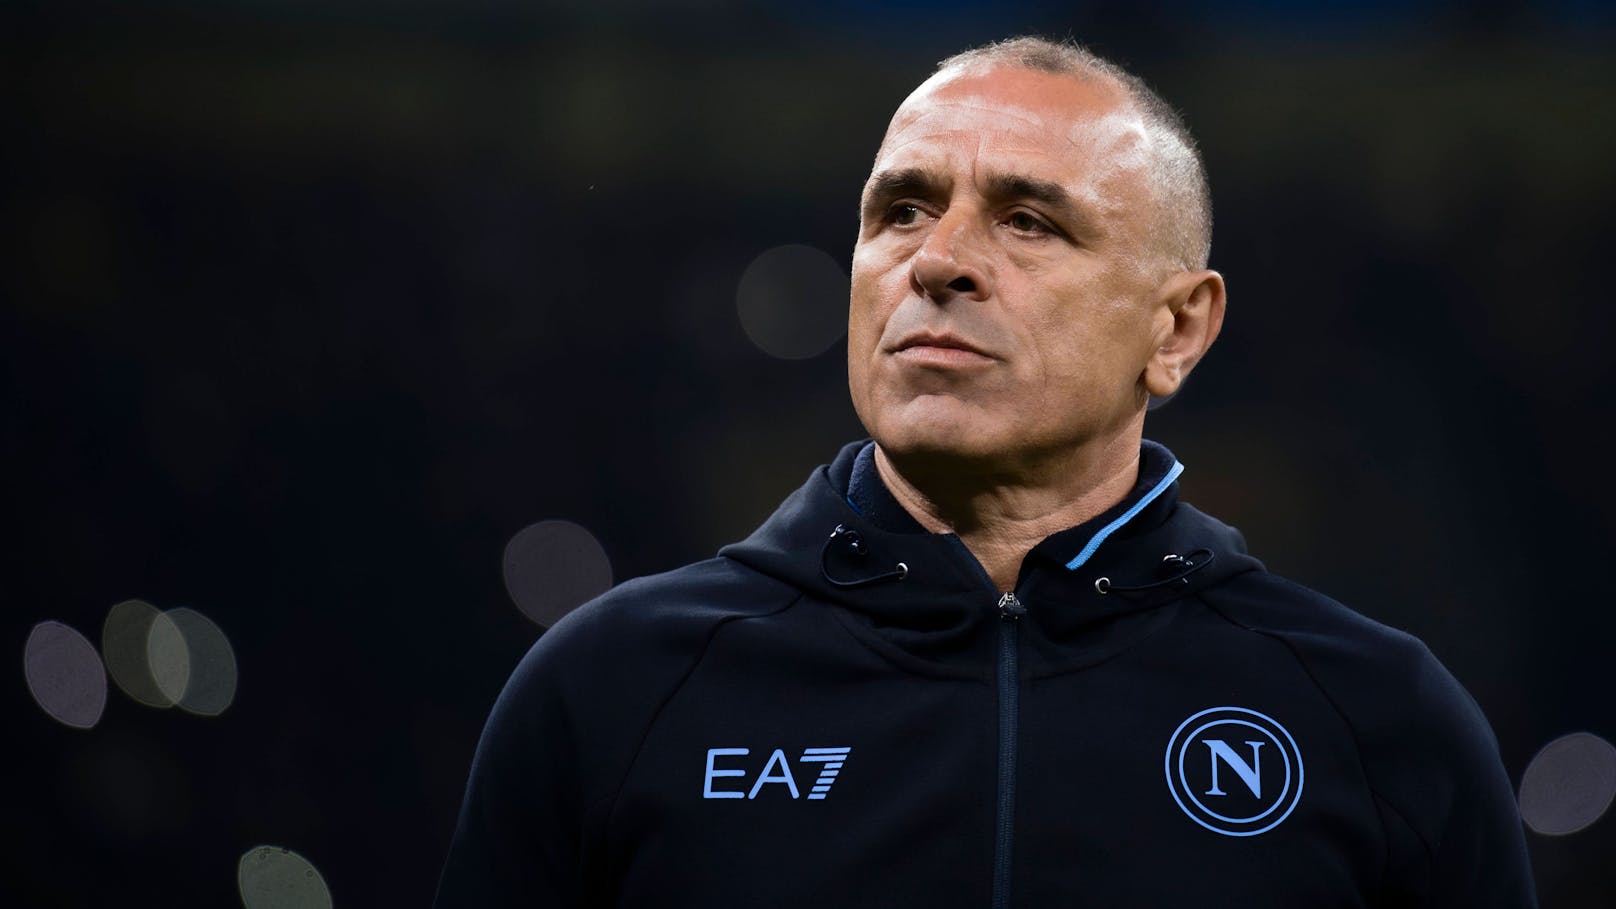 Kaffeehändler und Napoli-Coach betreut Team gegen ÖFB